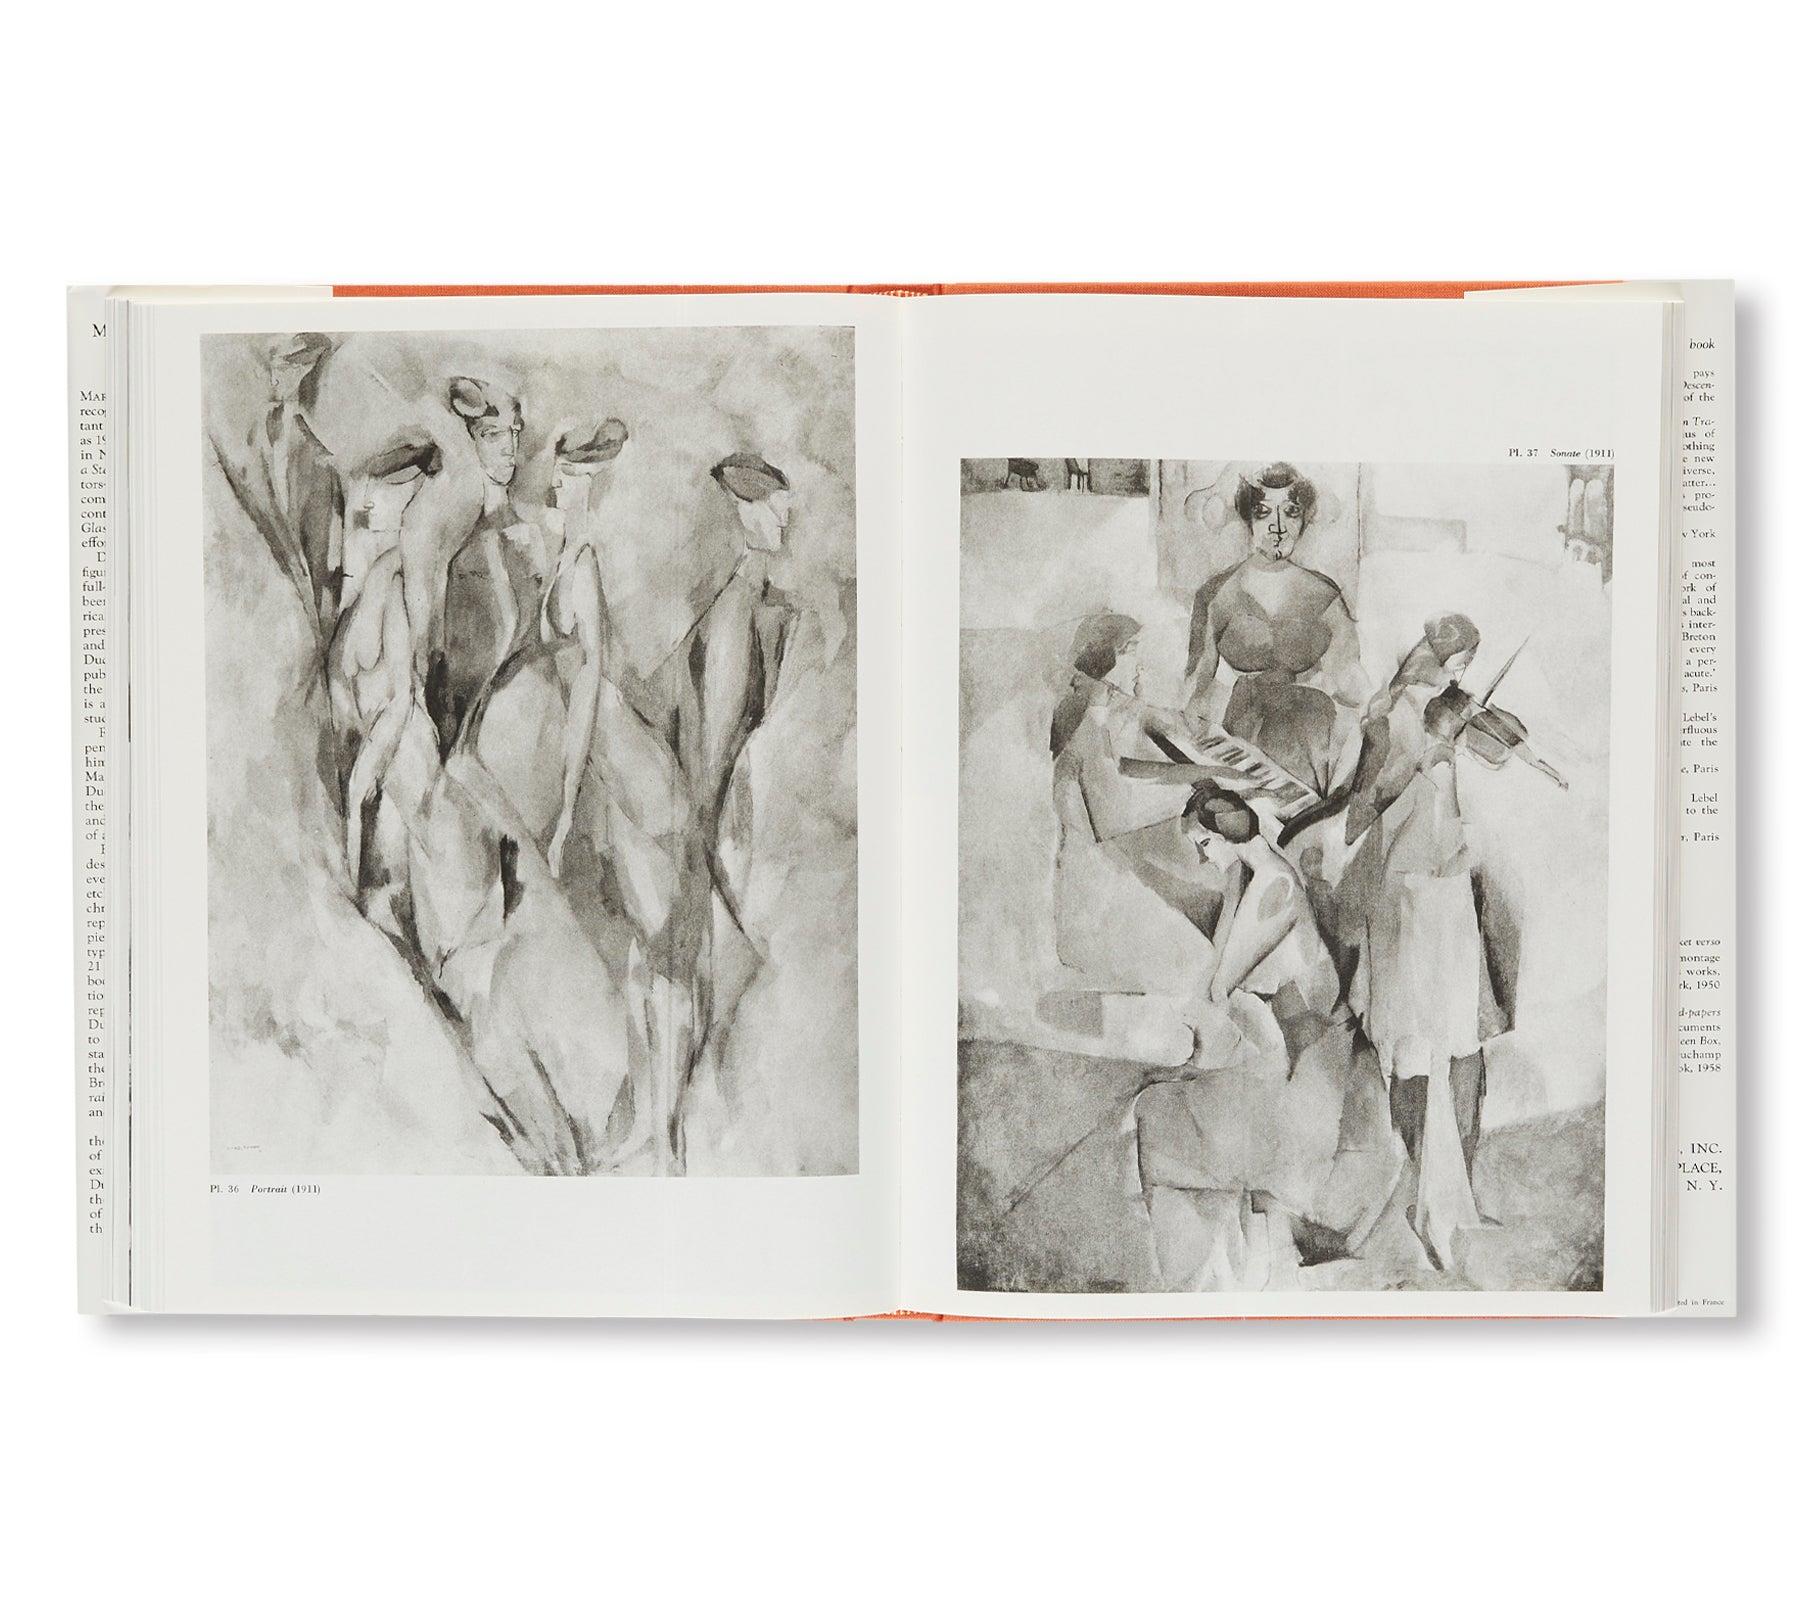 極美品 マルセル・デュシャン『Marcel Duchamp, notes』限定1000部 